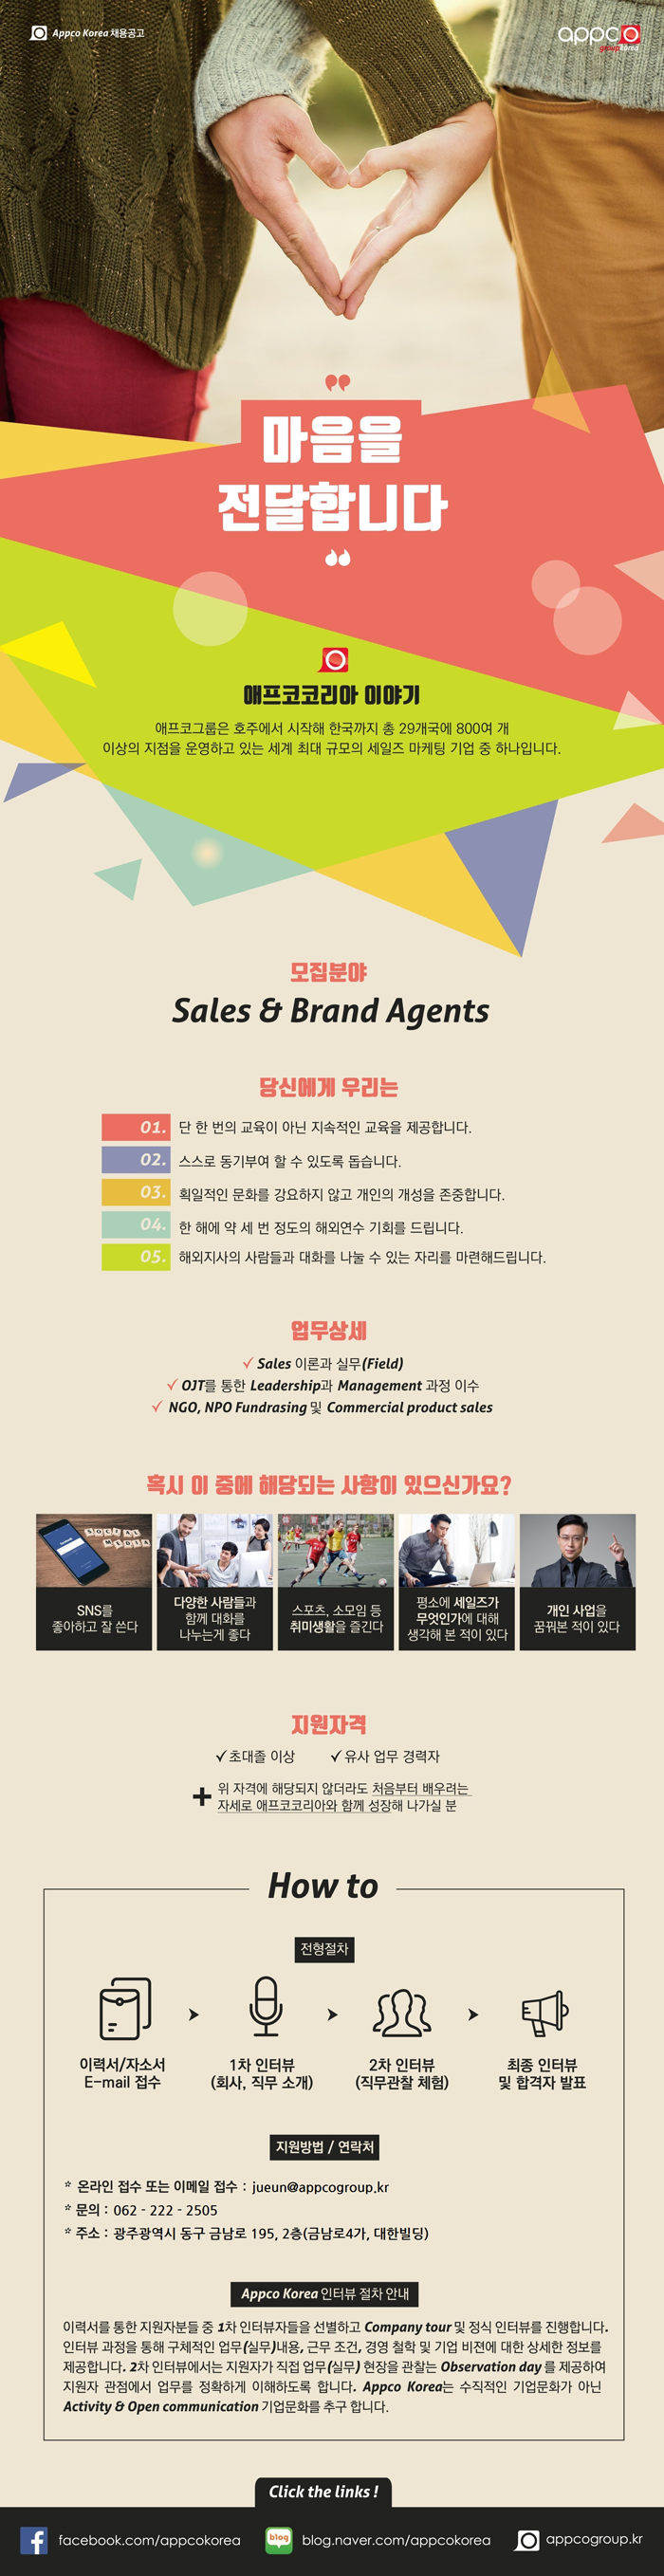 [외국계/광주지점] APPCO KOREA Sales & Branding Agents 모집